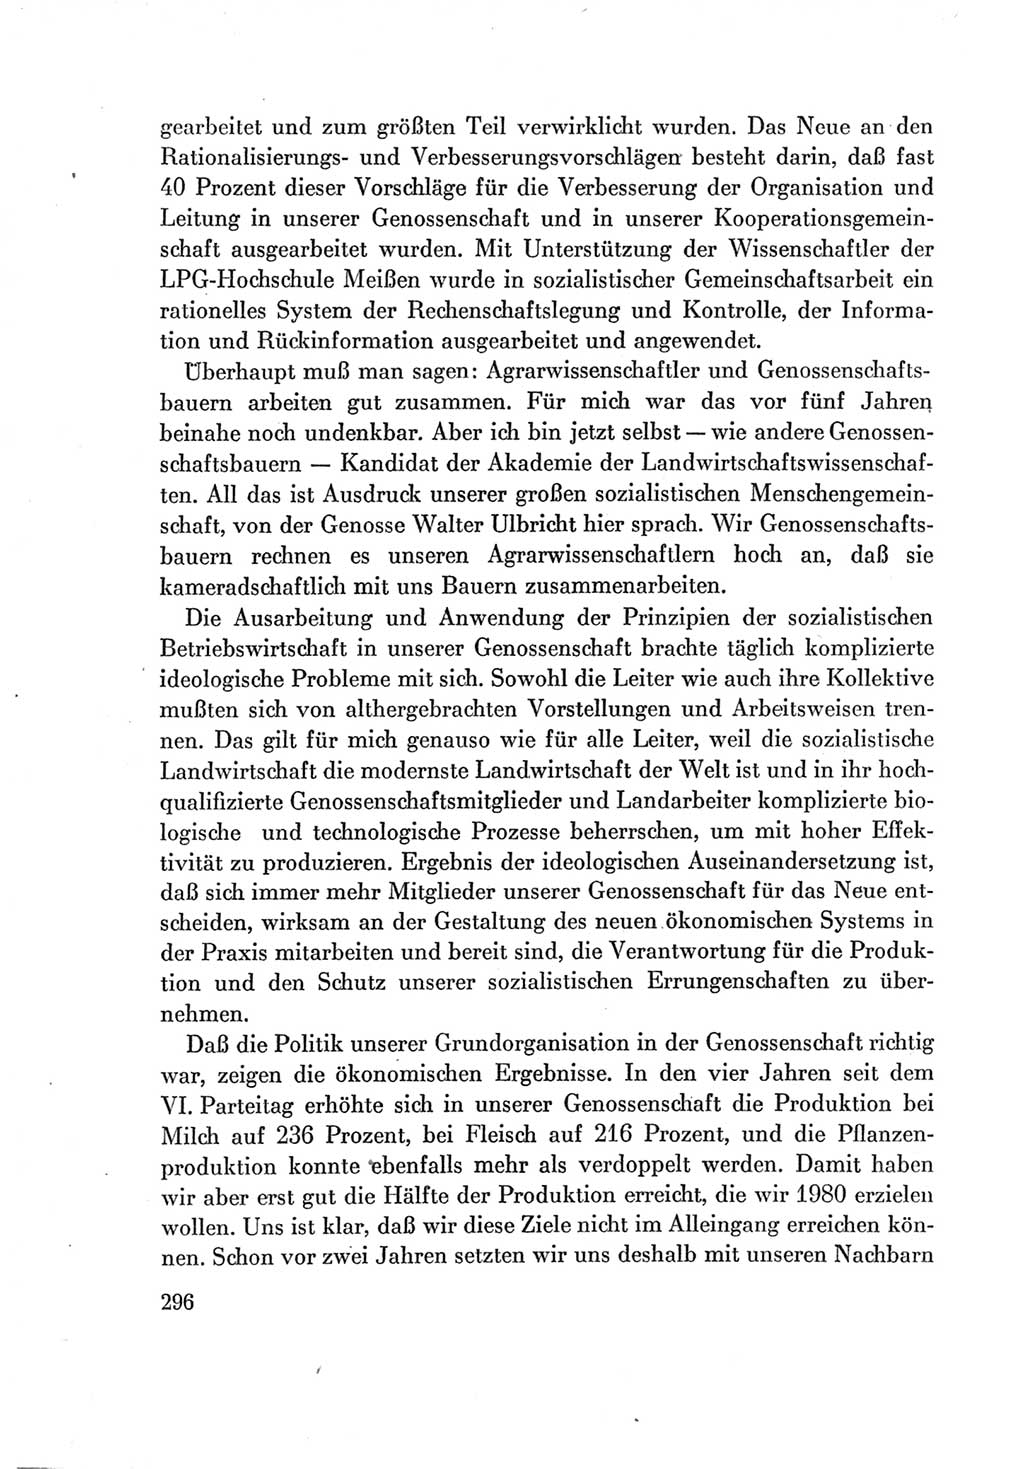 Protokoll der Verhandlungen des Ⅶ. Parteitages der Sozialistischen Einheitspartei Deutschlands (SED) [Deutsche Demokratische Republik (DDR)] 1967, Band Ⅰ, Seite 296 (Prot. Verh. Ⅶ. PT SED DDR 1967, Bd. Ⅰ, S. 296)